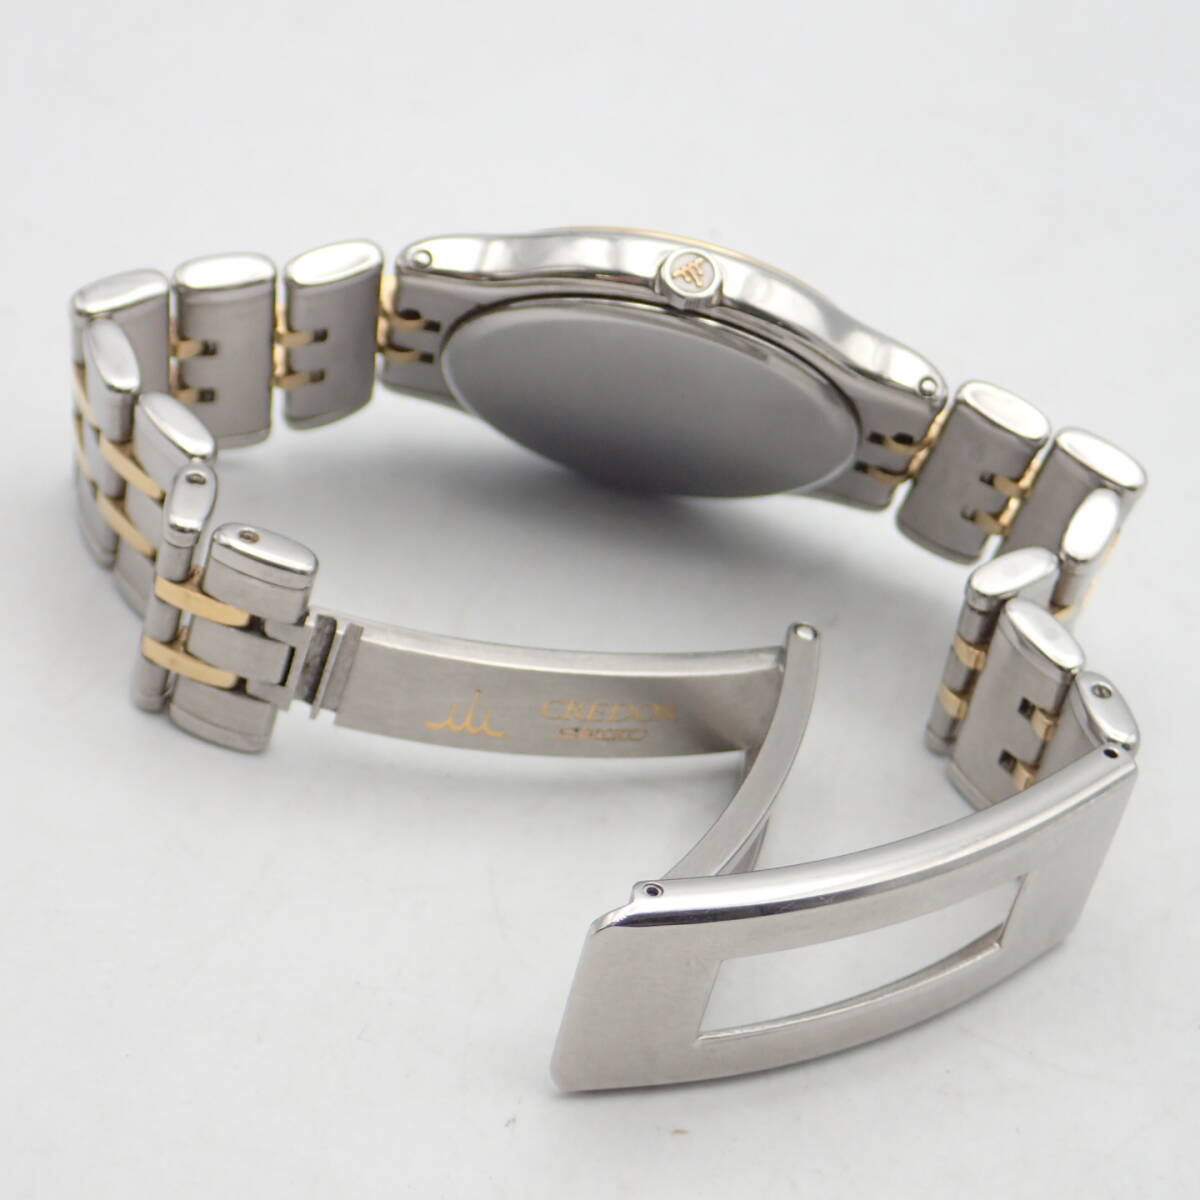 e05034/SEIKO Seiko / Credor / кварц / мужские наручные часы /18KT оправа / комбинированный / циферблат серебряный /8J86-6A00